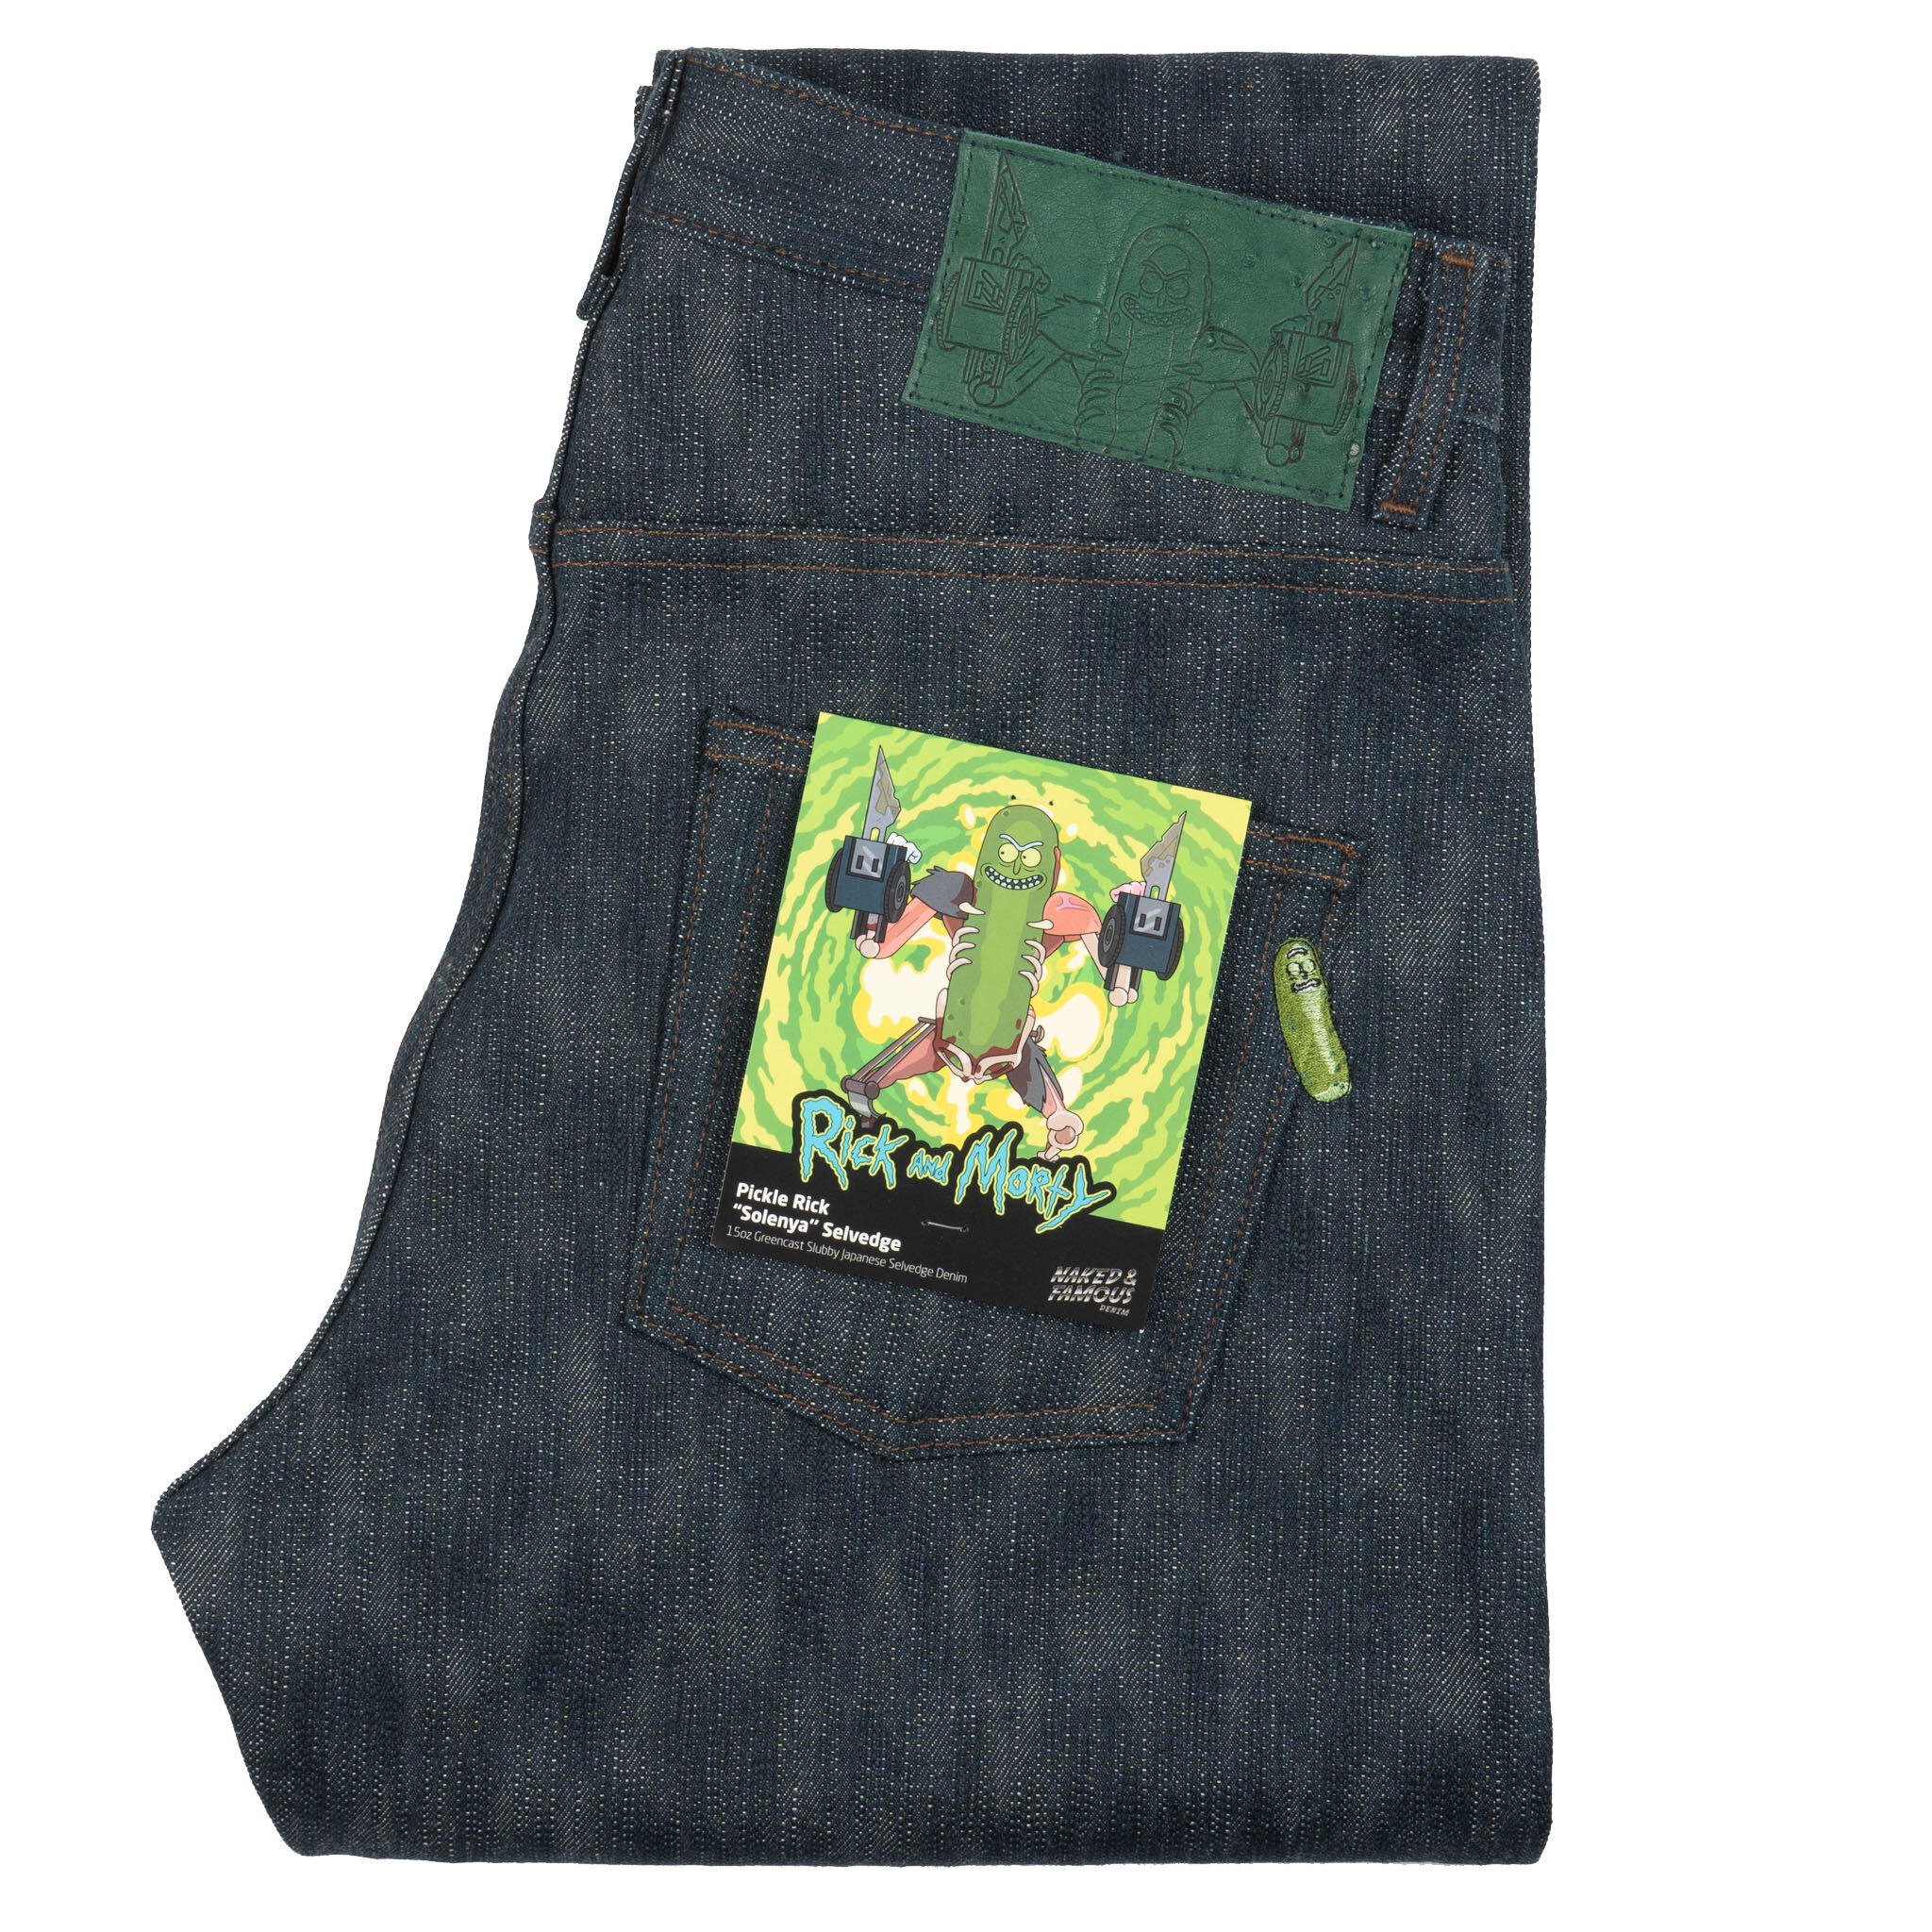  Picckle Rick “Solenya” Selvedge jeans - folded 